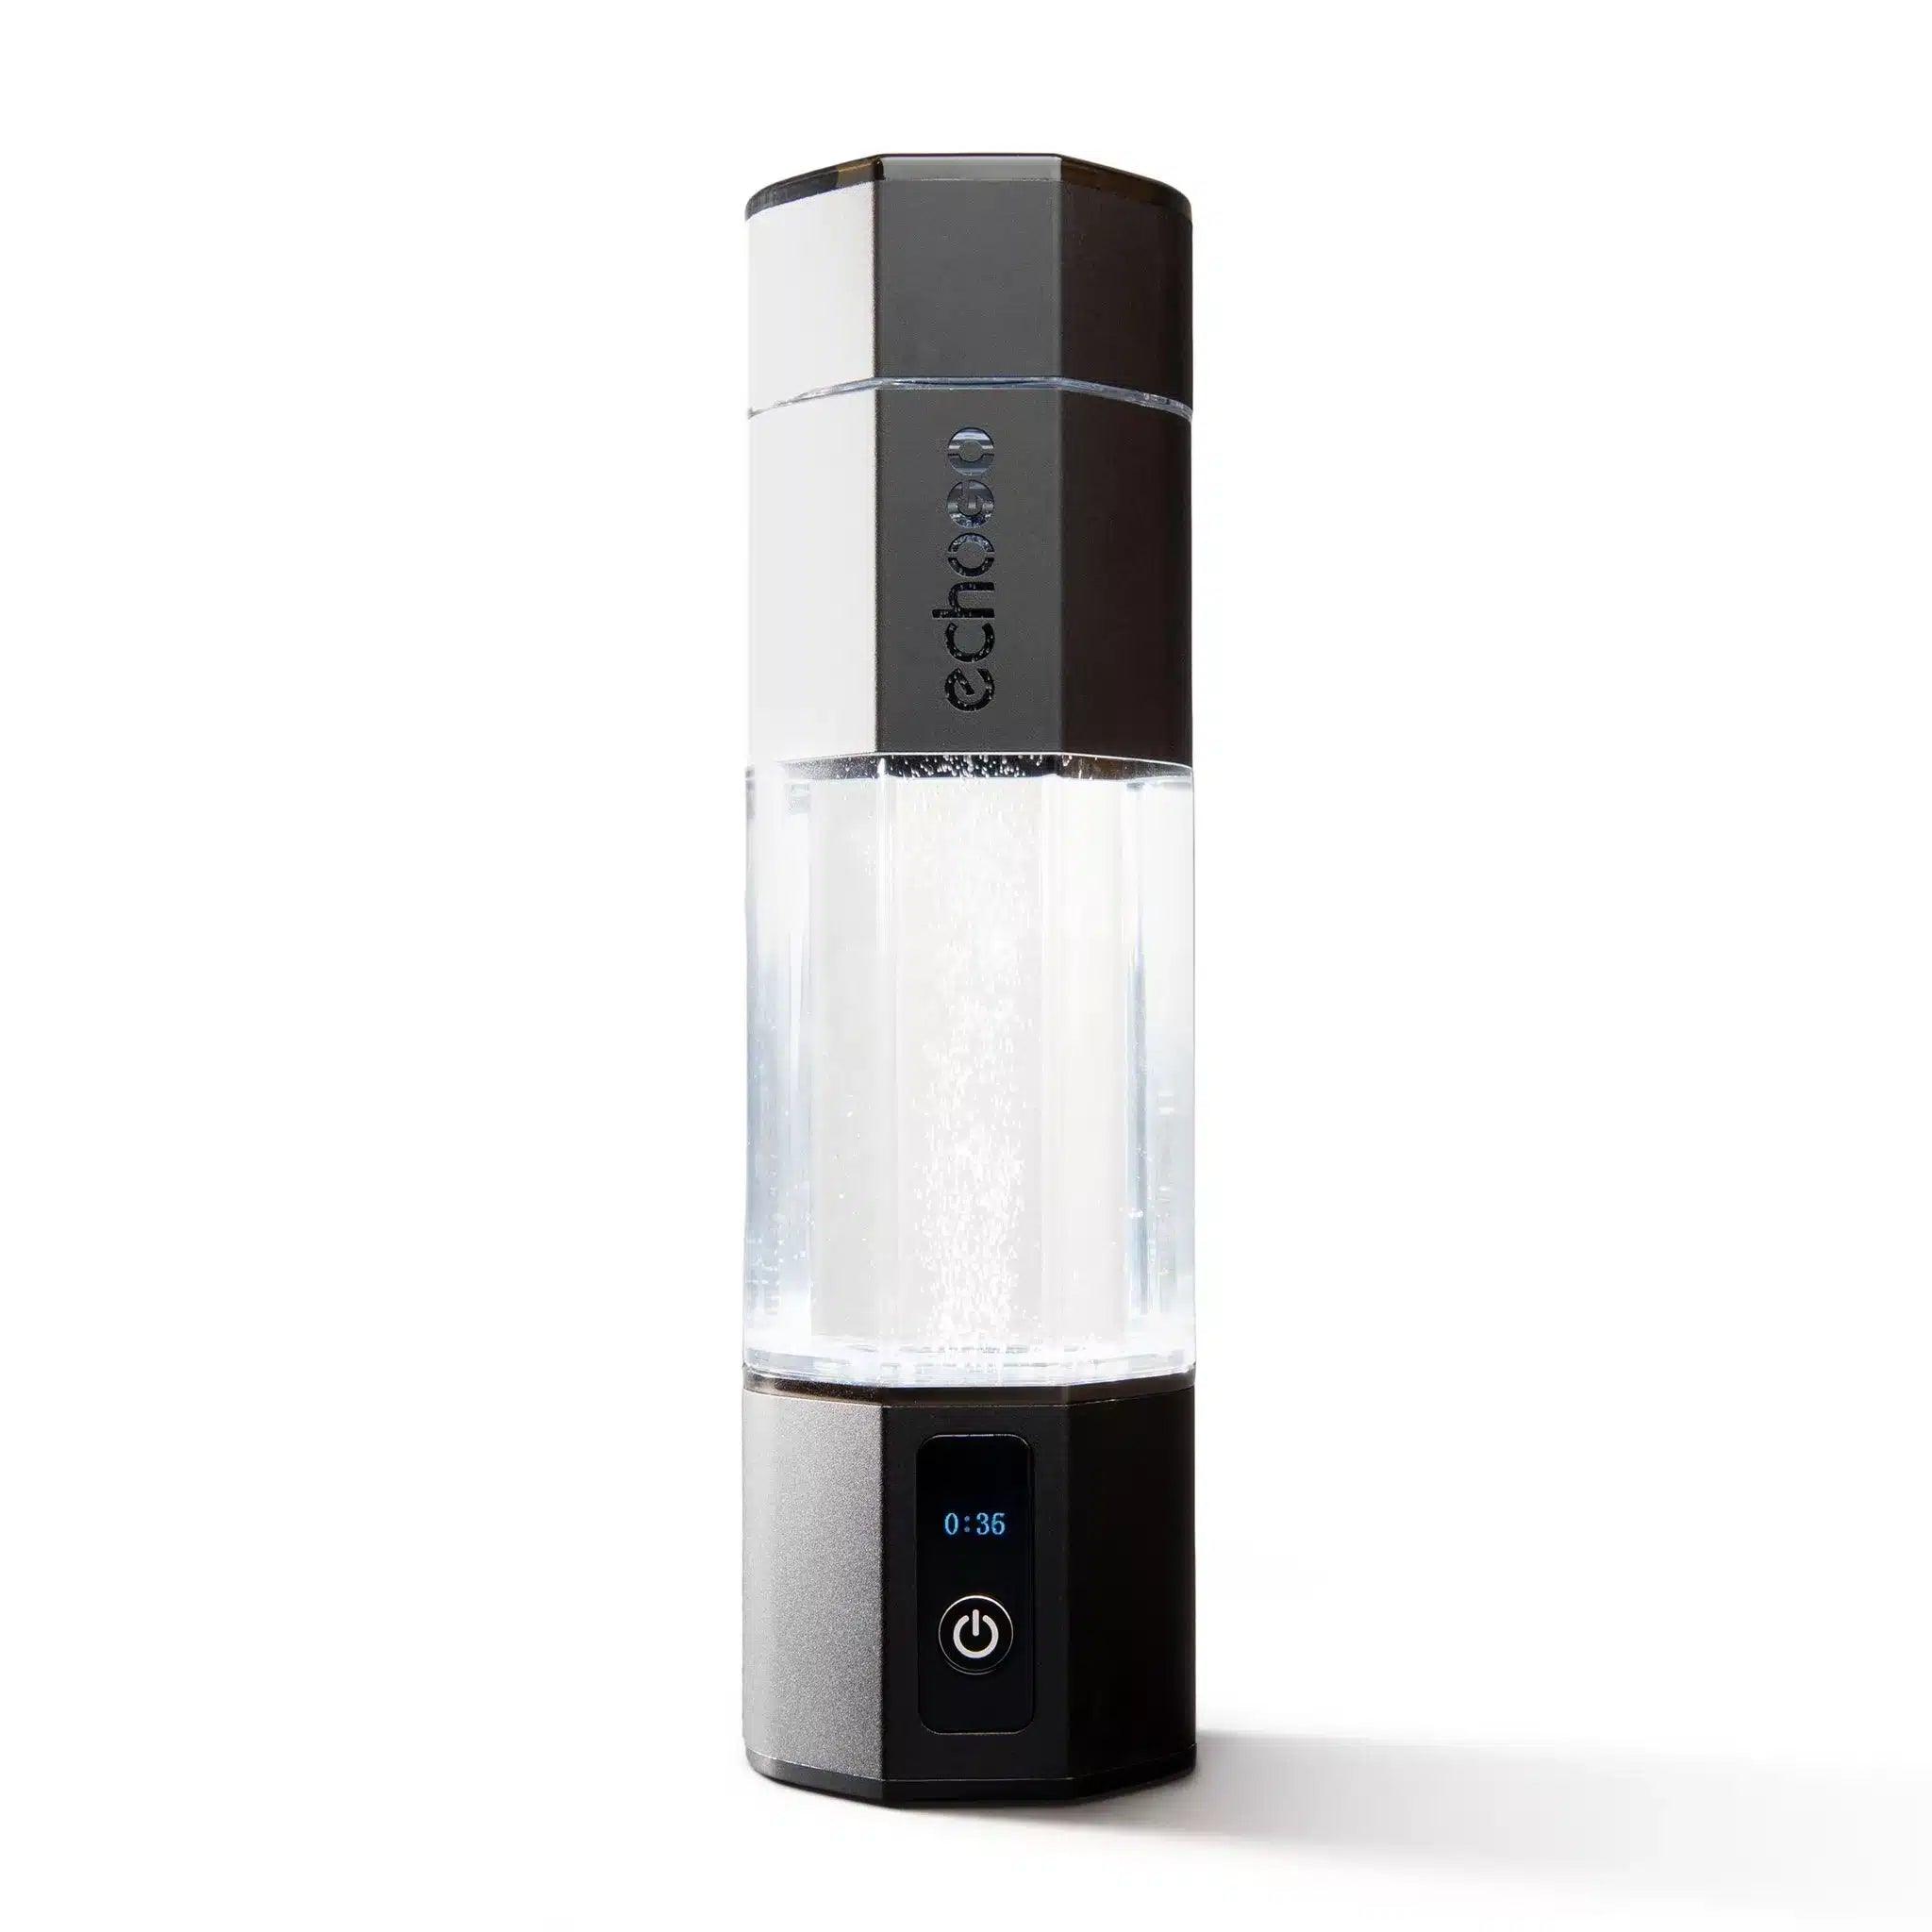 HydroLux™ - Portable Hydrogen Water Infuser - Sierra Emporium